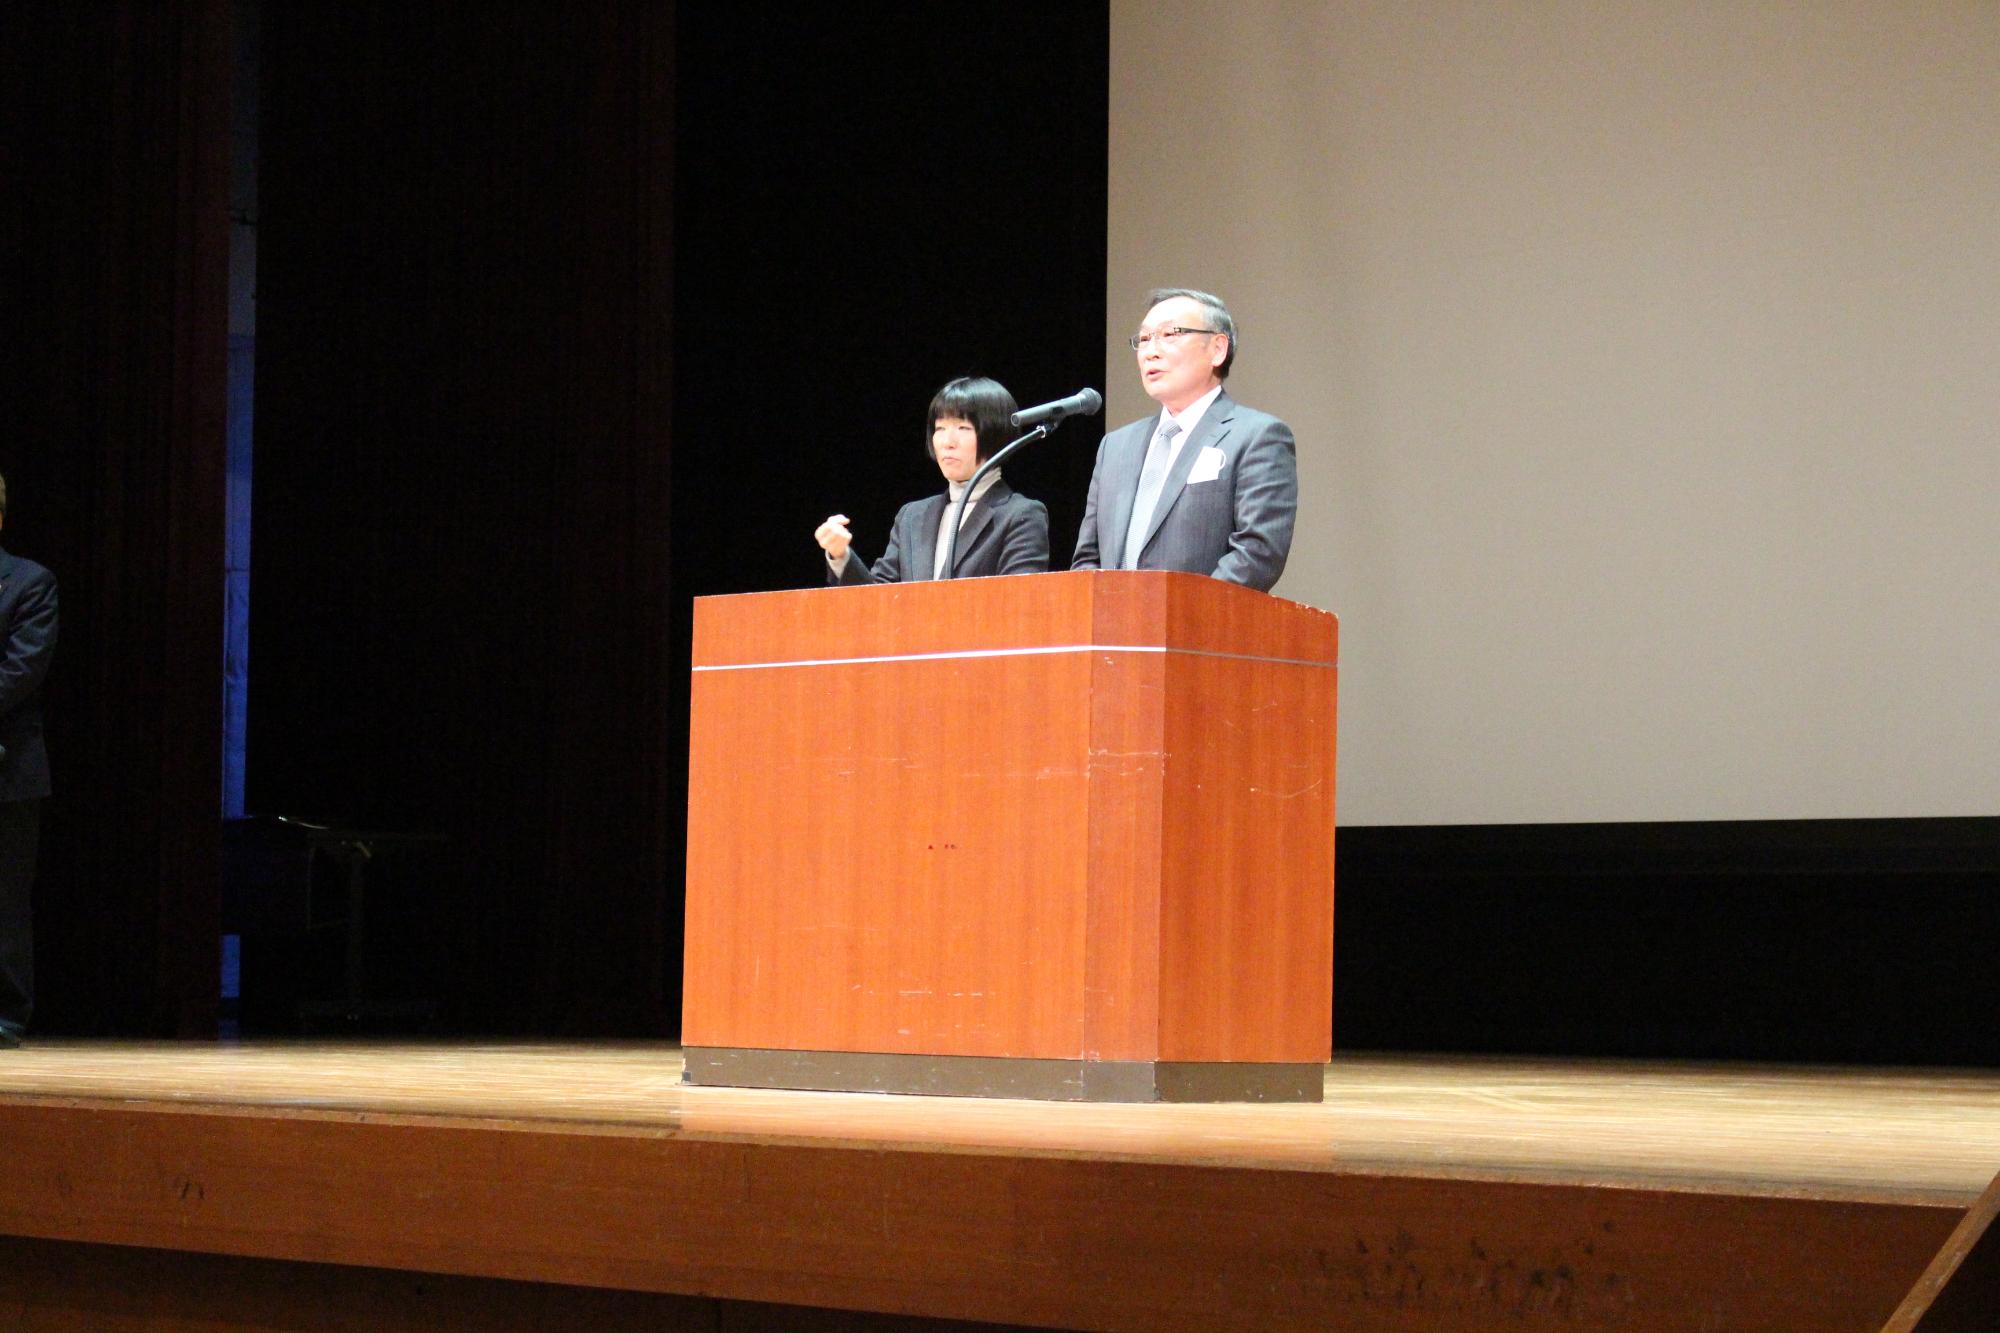 演台の後ろに立って話をする西潟自治会長会会長と、その横で手話をしている女性の写真